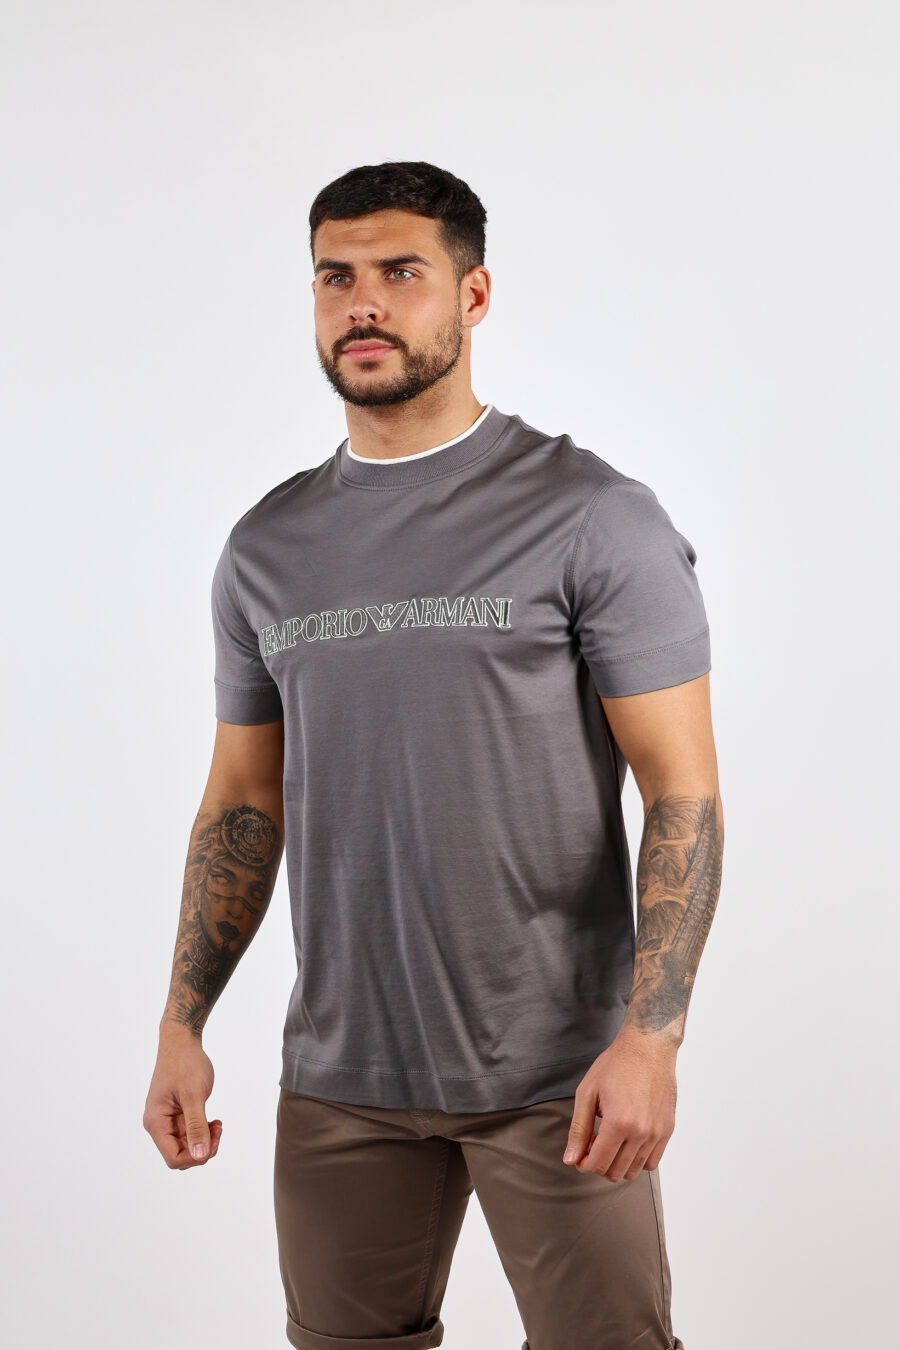 Camiseta gris con maxilogo "emporio" - BLS Fashion 67